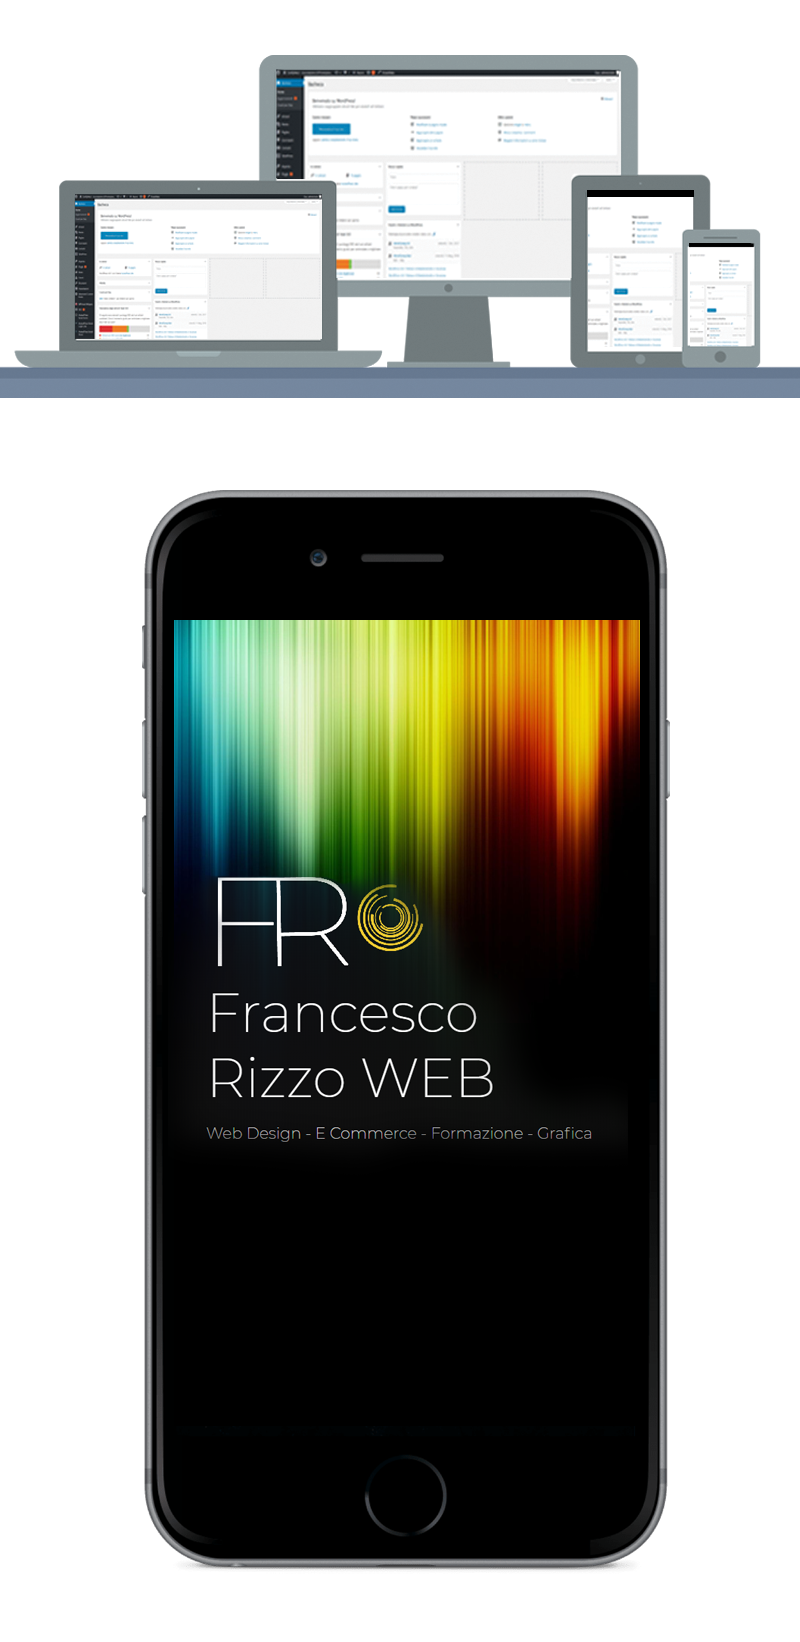 Francesco Rizzo Web Design